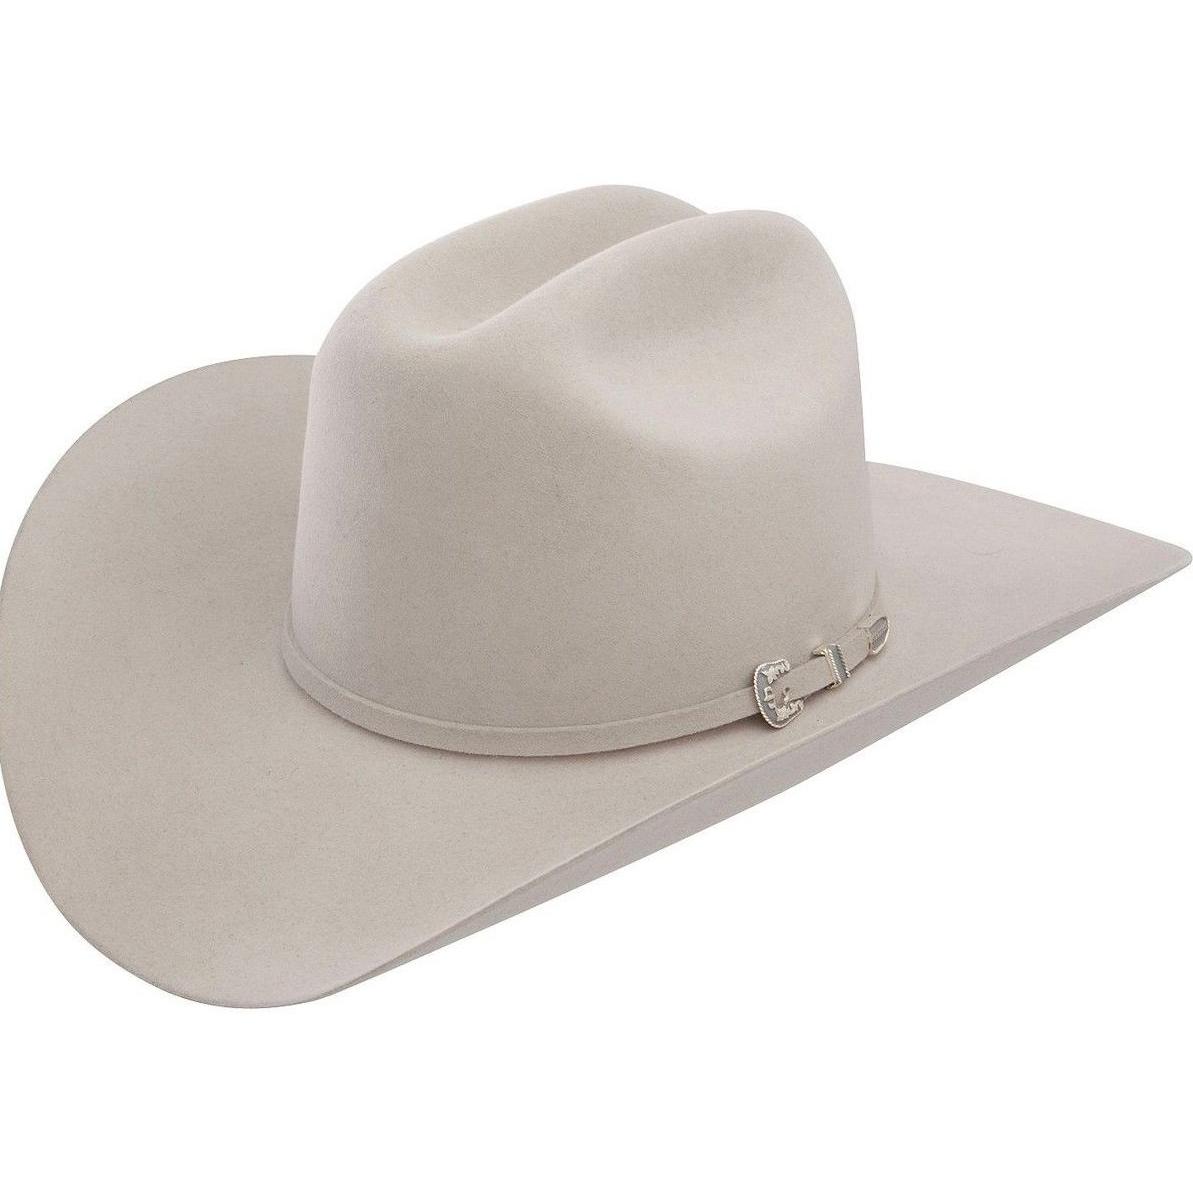 6x Stetson Skyline Fur Felt Cowboy Hat Silver Gray | Rugged Cowboy